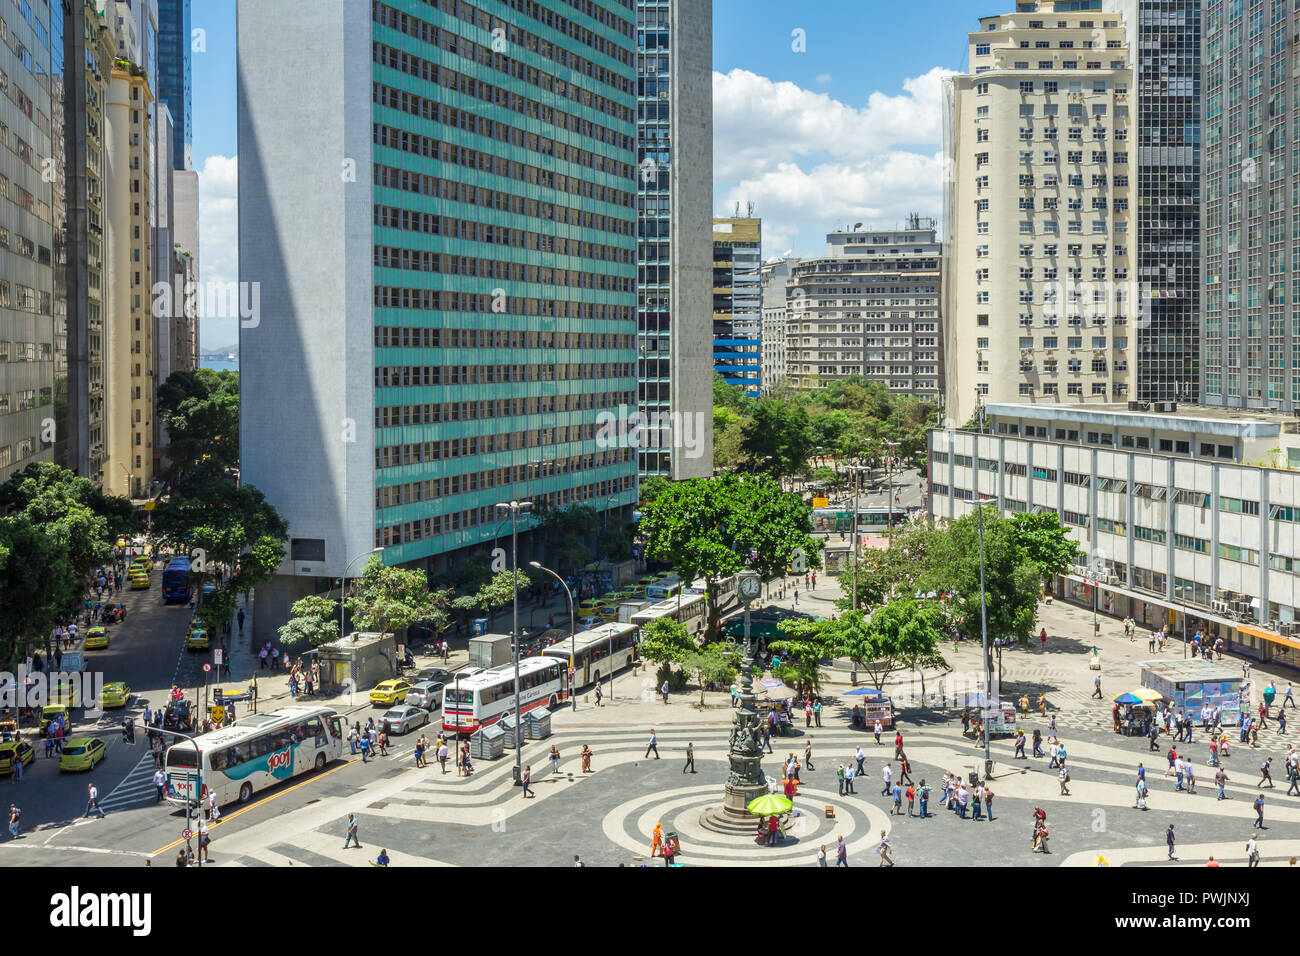 Carioca square in the city centre of Rio de Janeiro, Brazil, South America Stock Photo